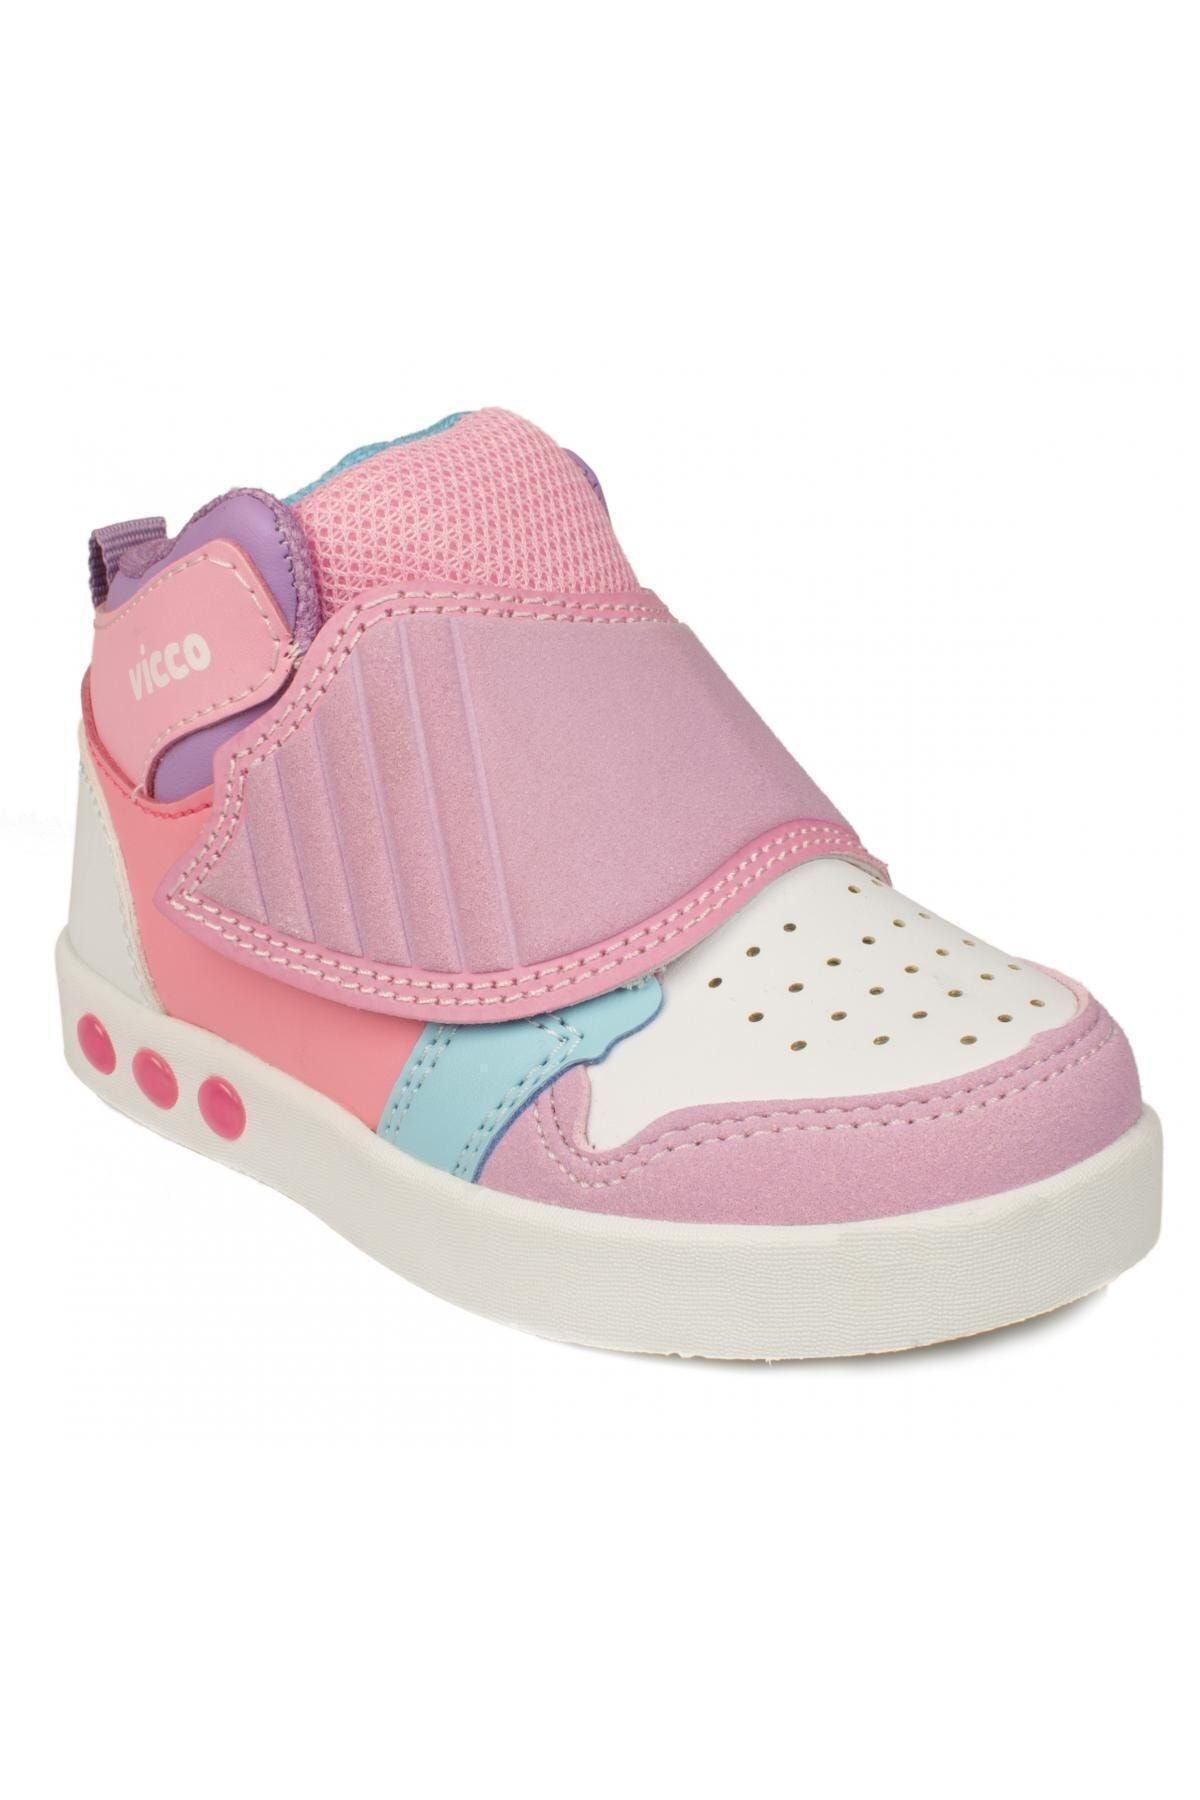 Vicco Kız Bebek Pembe 313.b20k.100 Bebe Işıklı Spor Ayakkabı